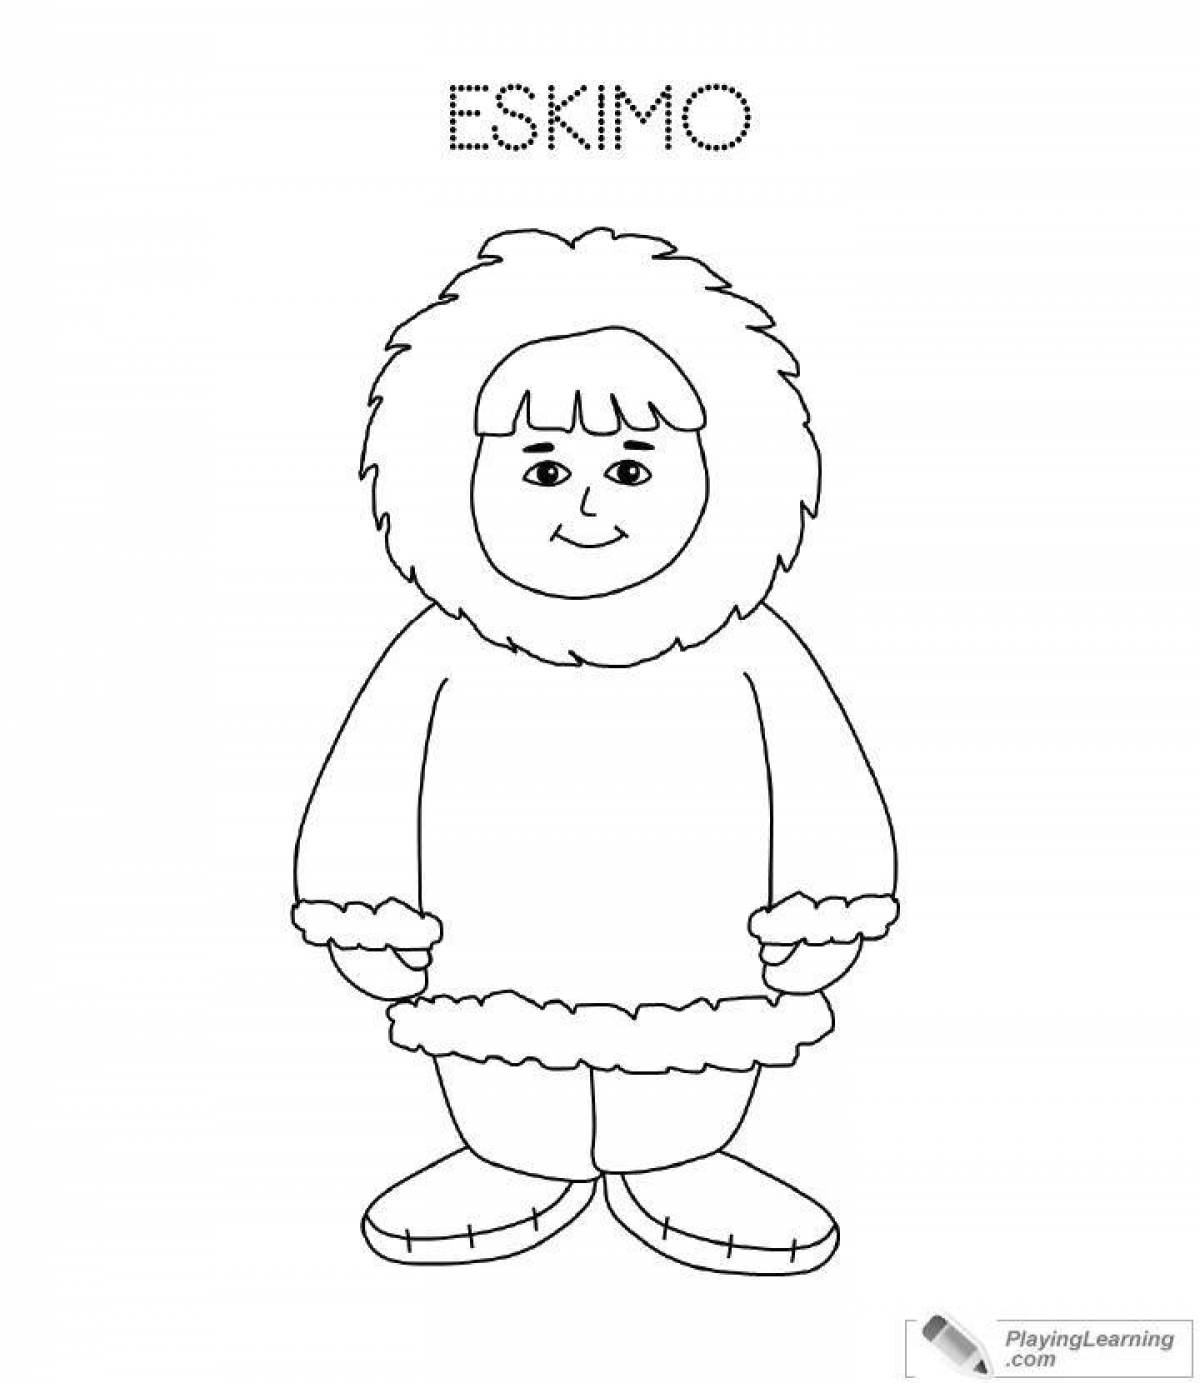 Funny eskimo coloring book